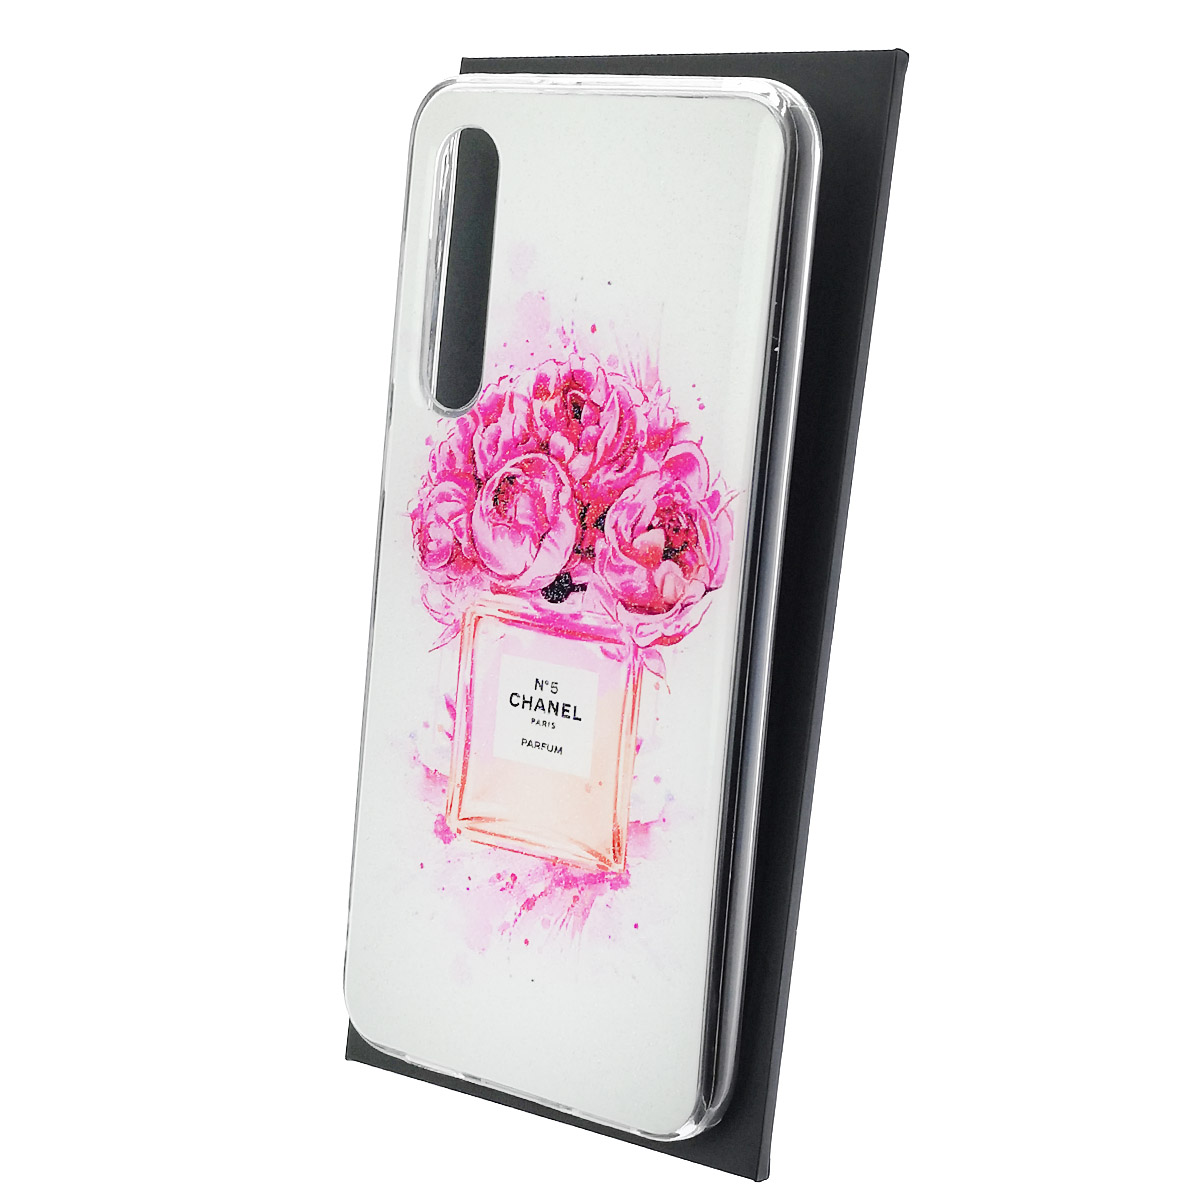 Чехол накладка для XIAOMI Mi 9 SE, силикон, глянцевый, блестки, рисунок Chanel номер 5 Paris Parfum